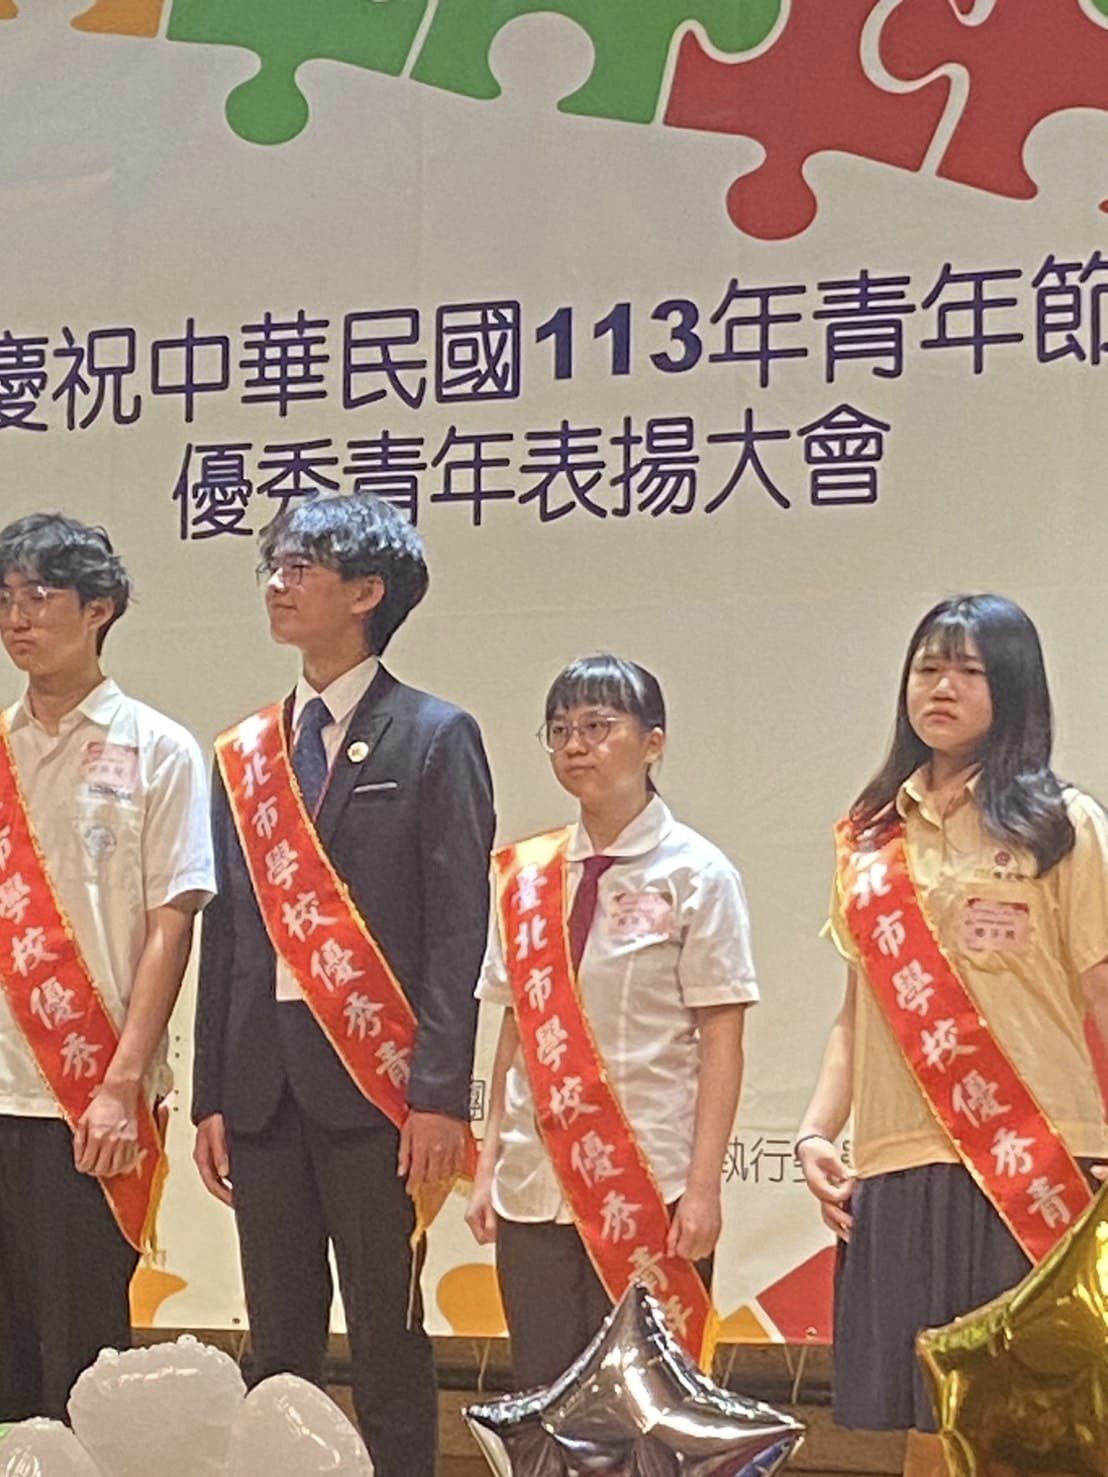 賀   本校餐三忠藍雅育榮獲113中華民國優秀青年殊榮